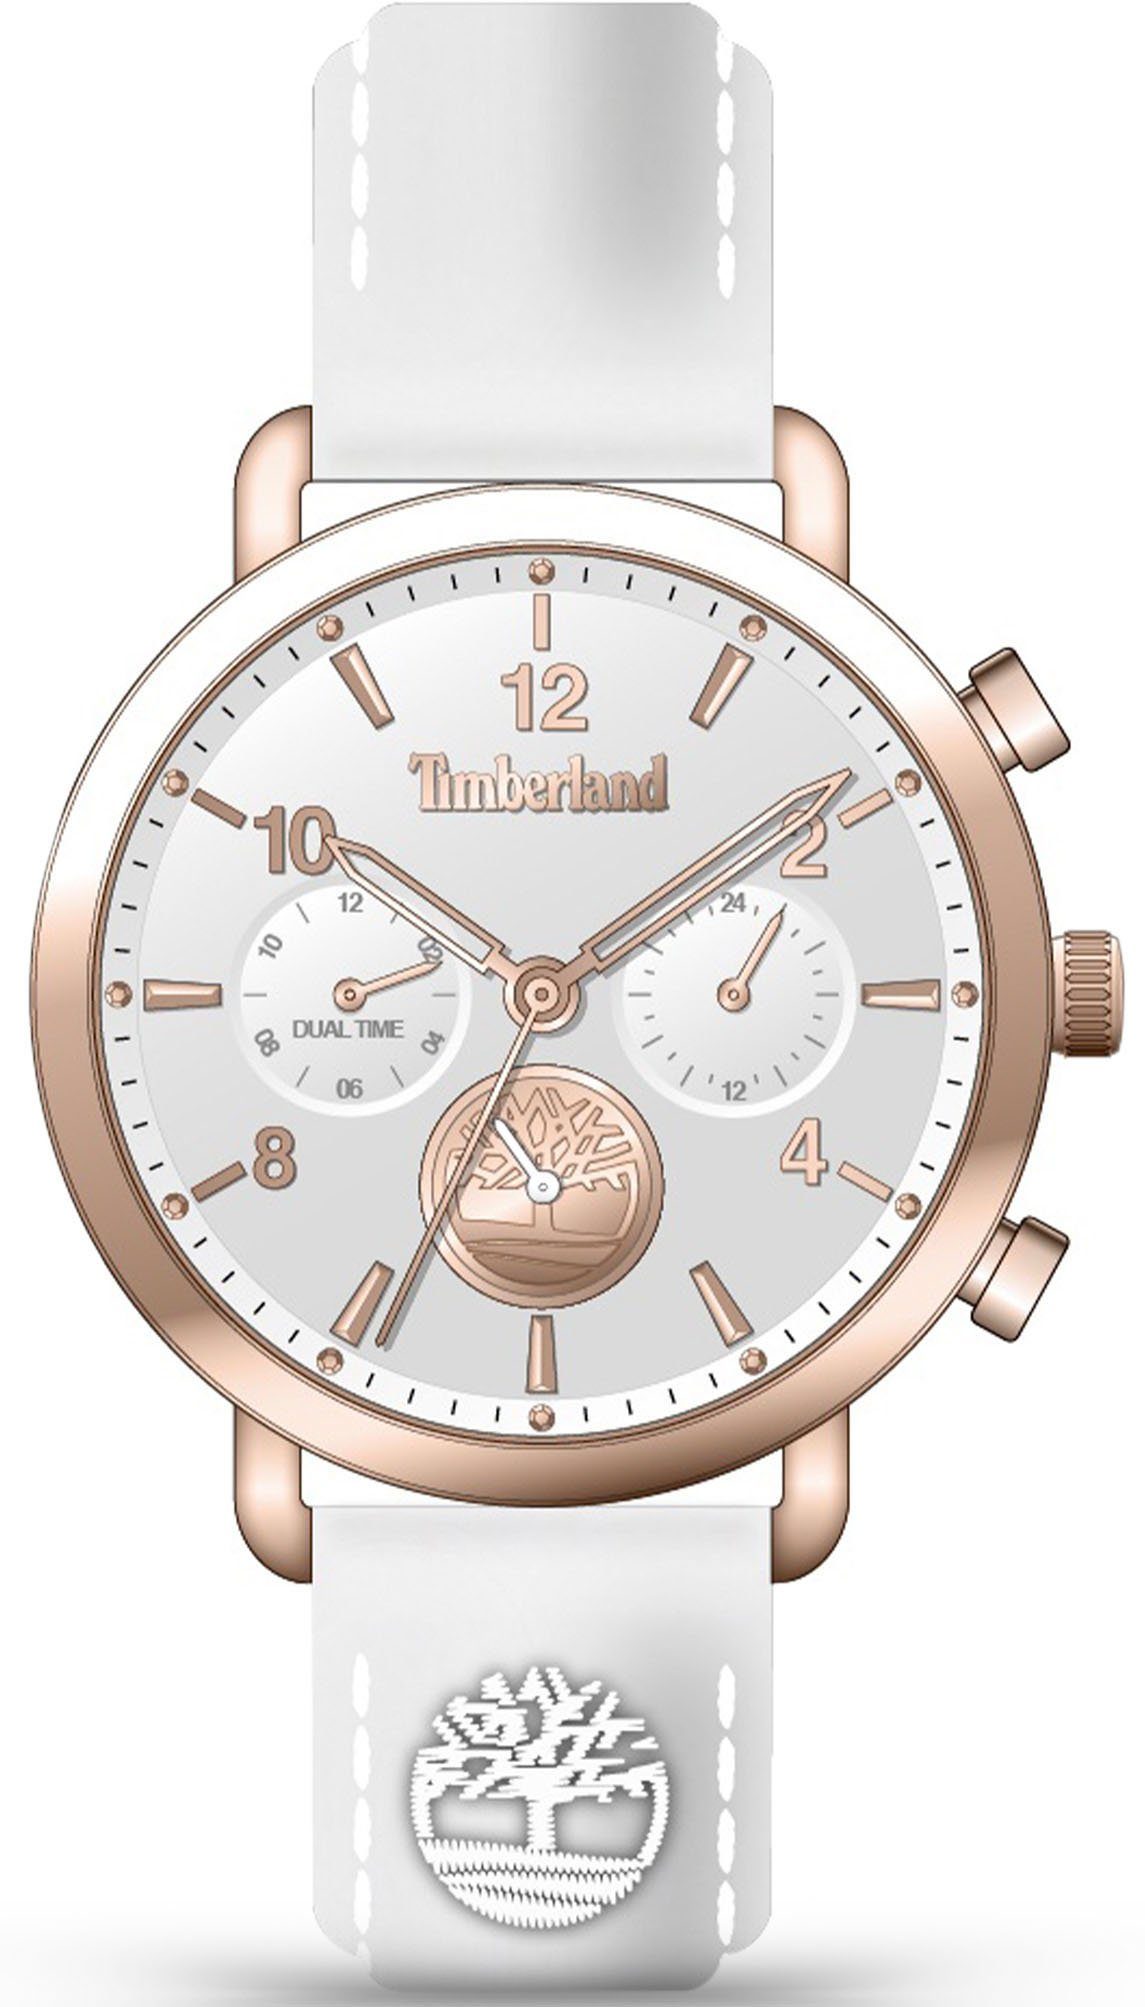 Timberland Multifunctioneel horloge online bestellen OTTO